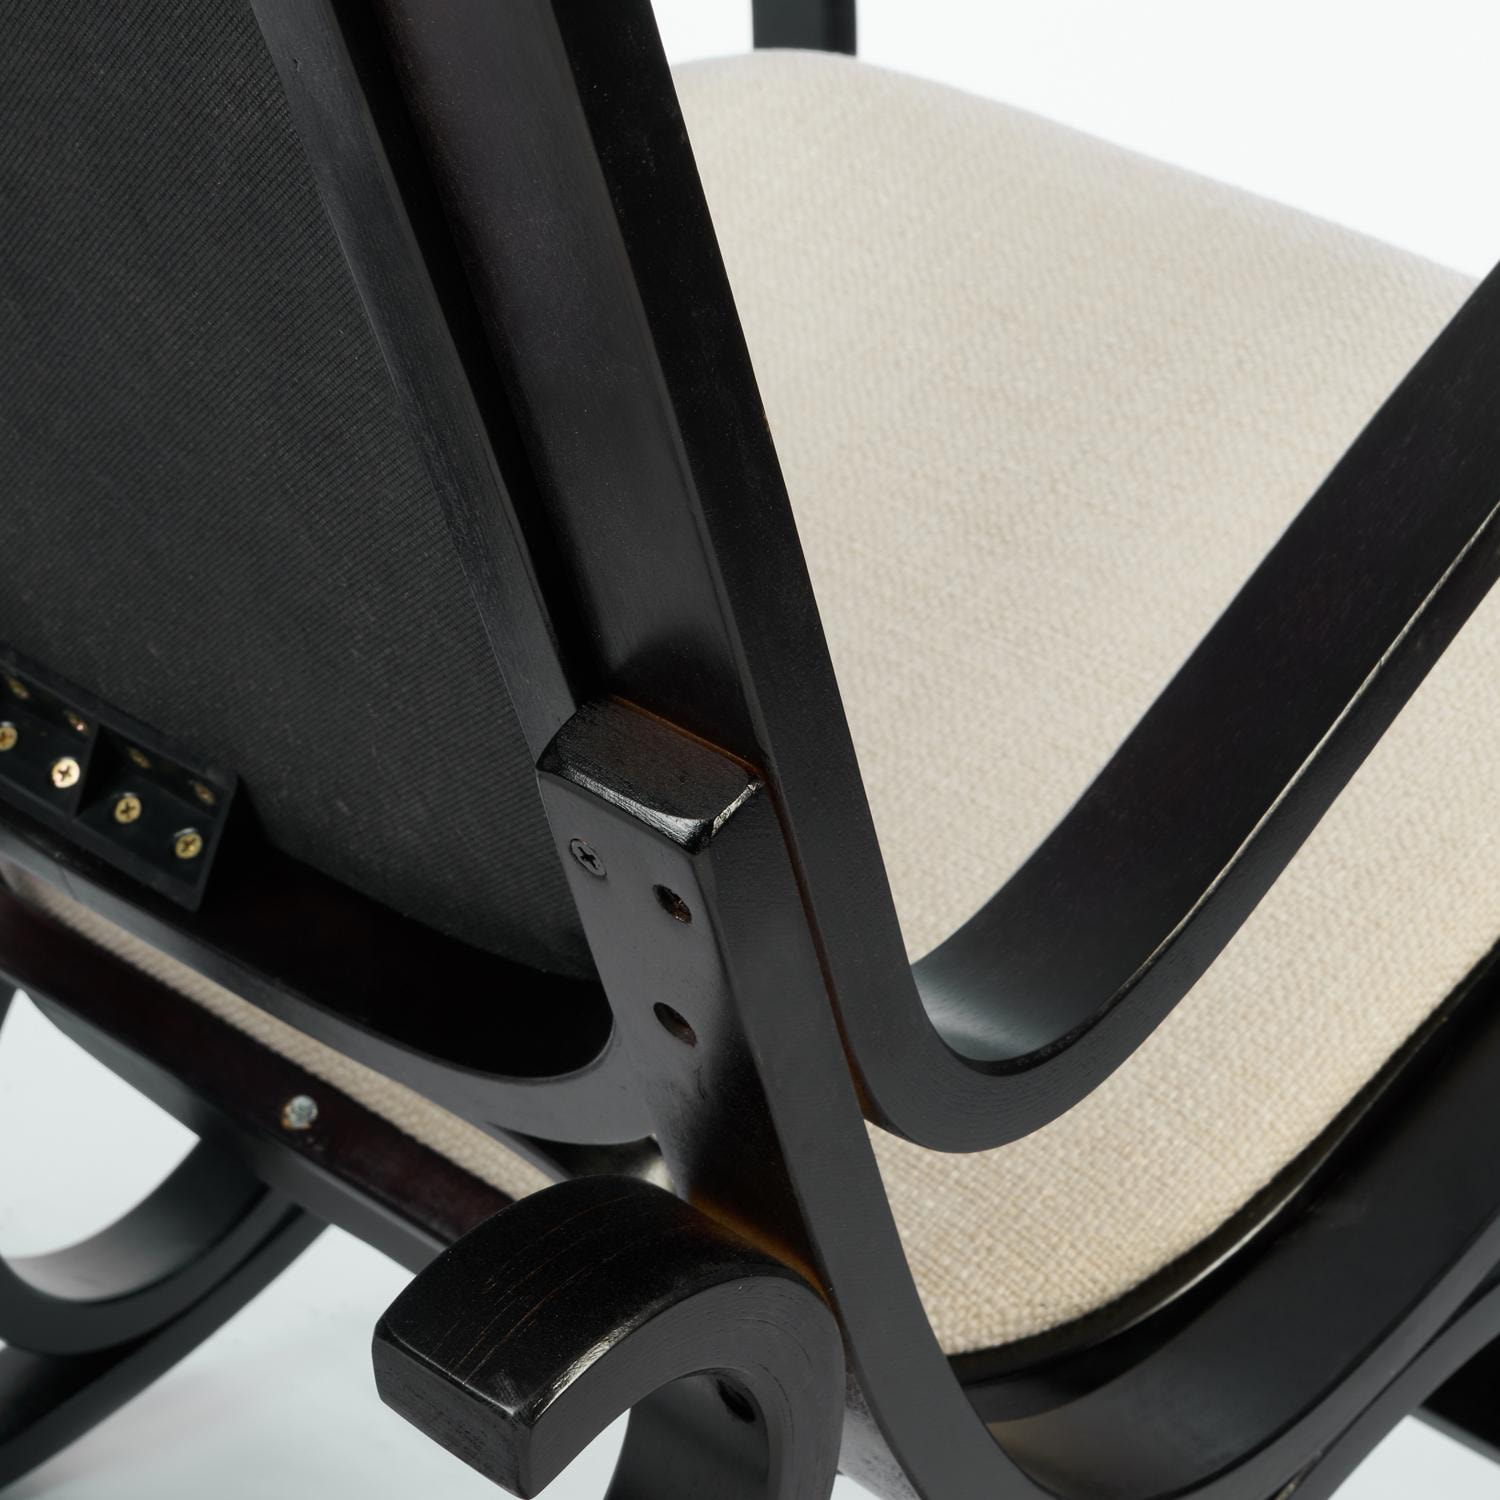 Кресло-качалка mod. AX3002-2 венге #9, ткань бежевая